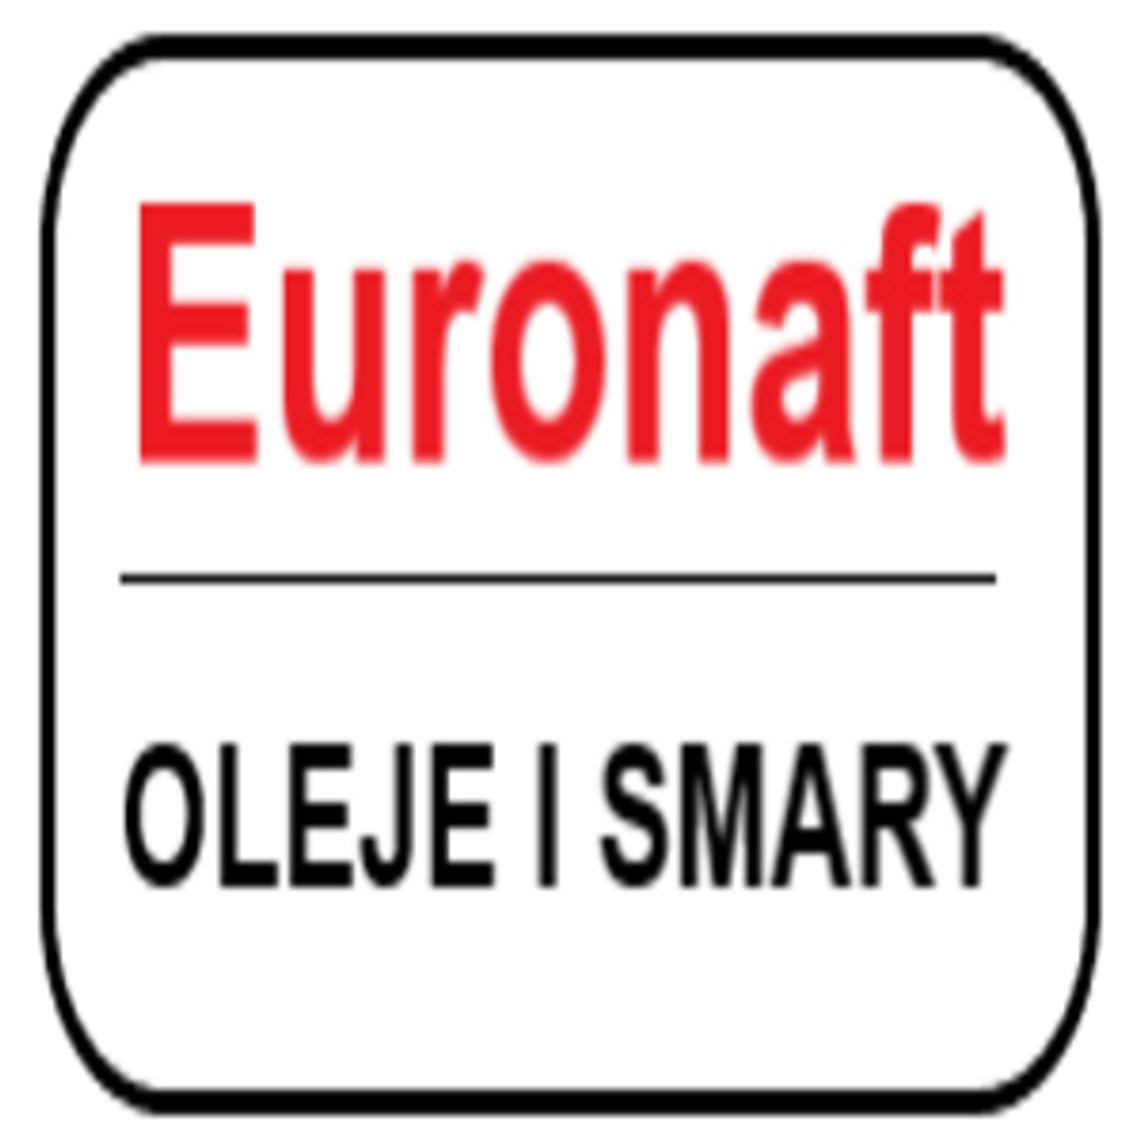 Oleje silnikowe oraz środki smarne dla motoryzacji i przemysłu - Euronaft